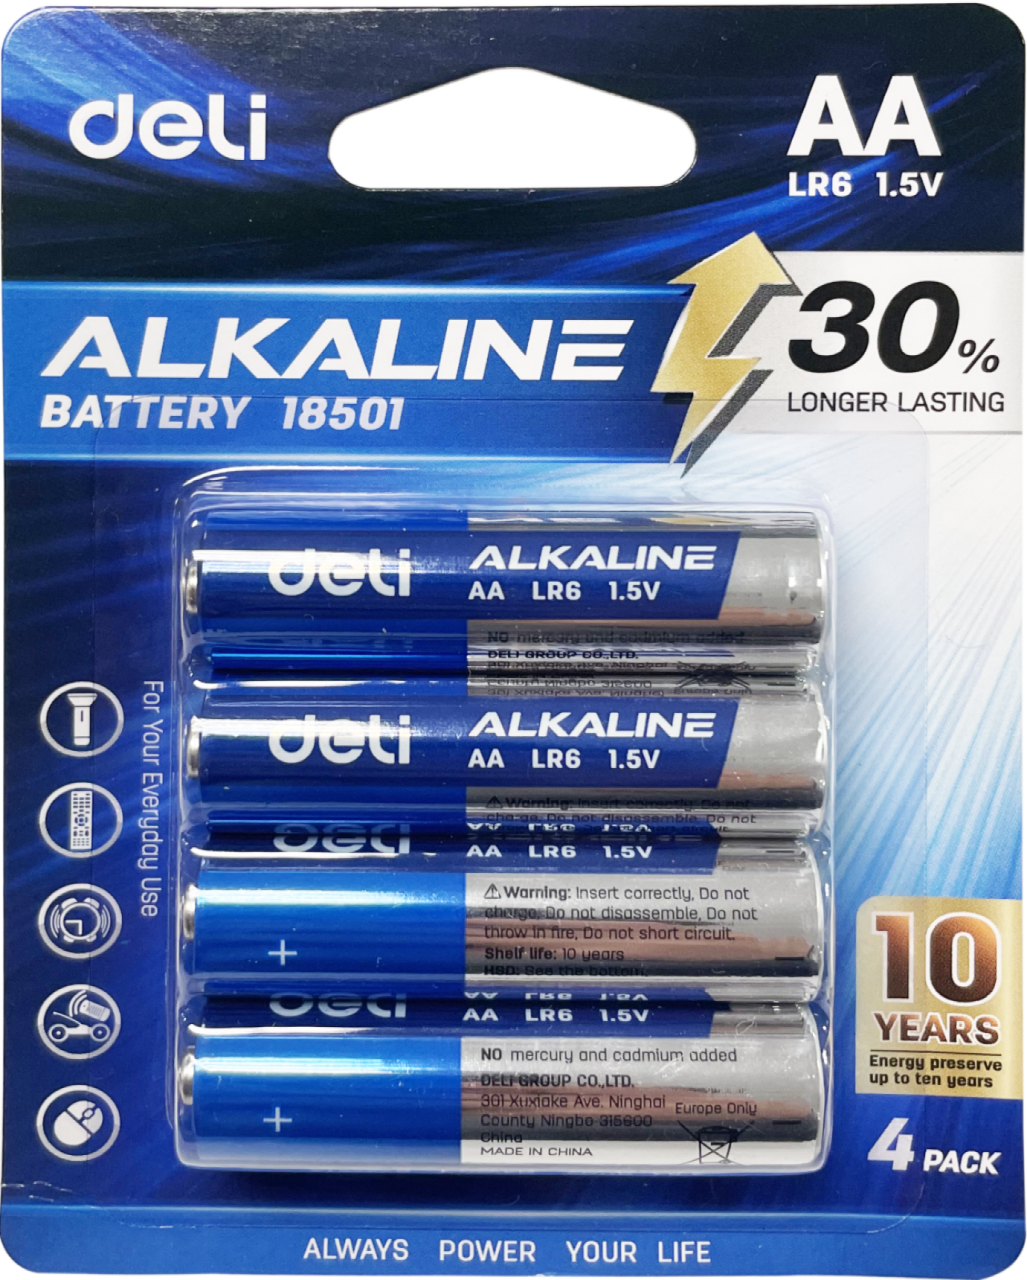 Deli Alkaline Battery 4AA Blister Card